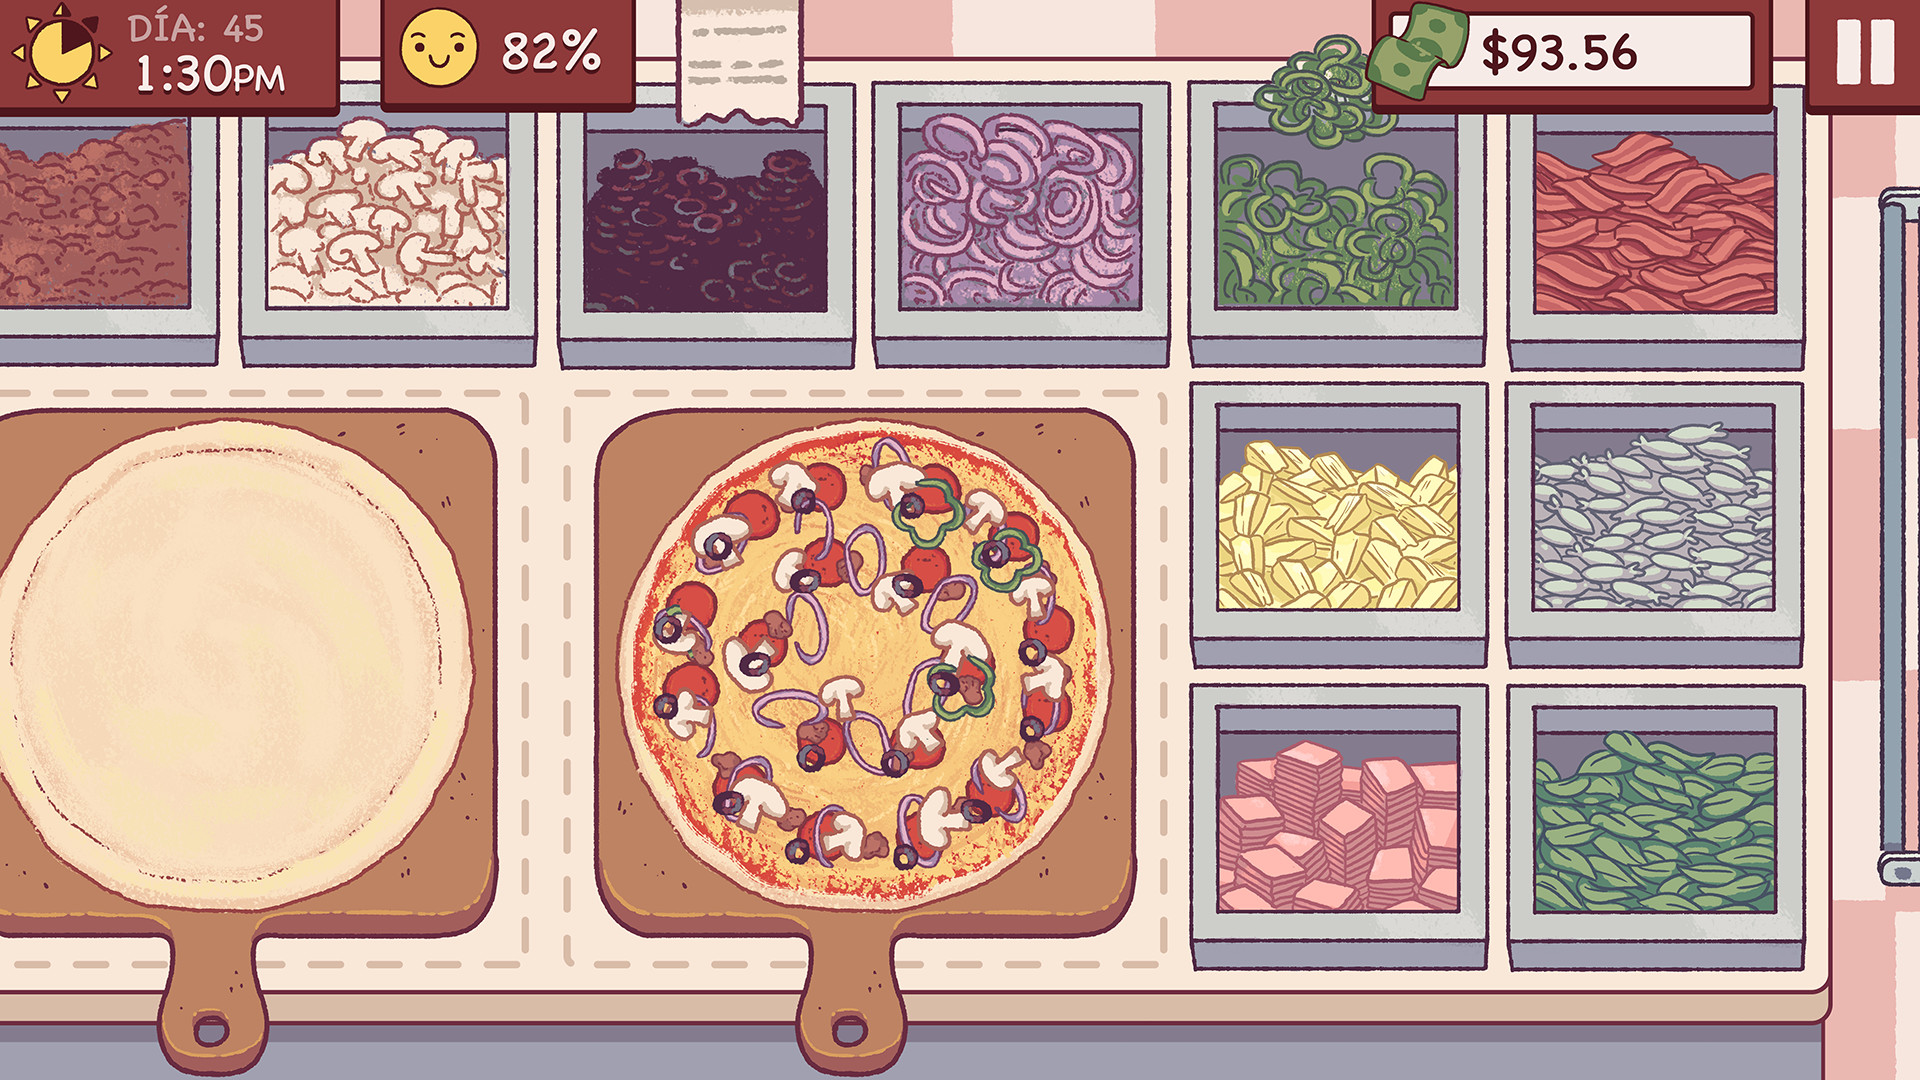 Cómo quitar las cajas de ingredientes del mostrador en Buena Pizza, Gran Pizza